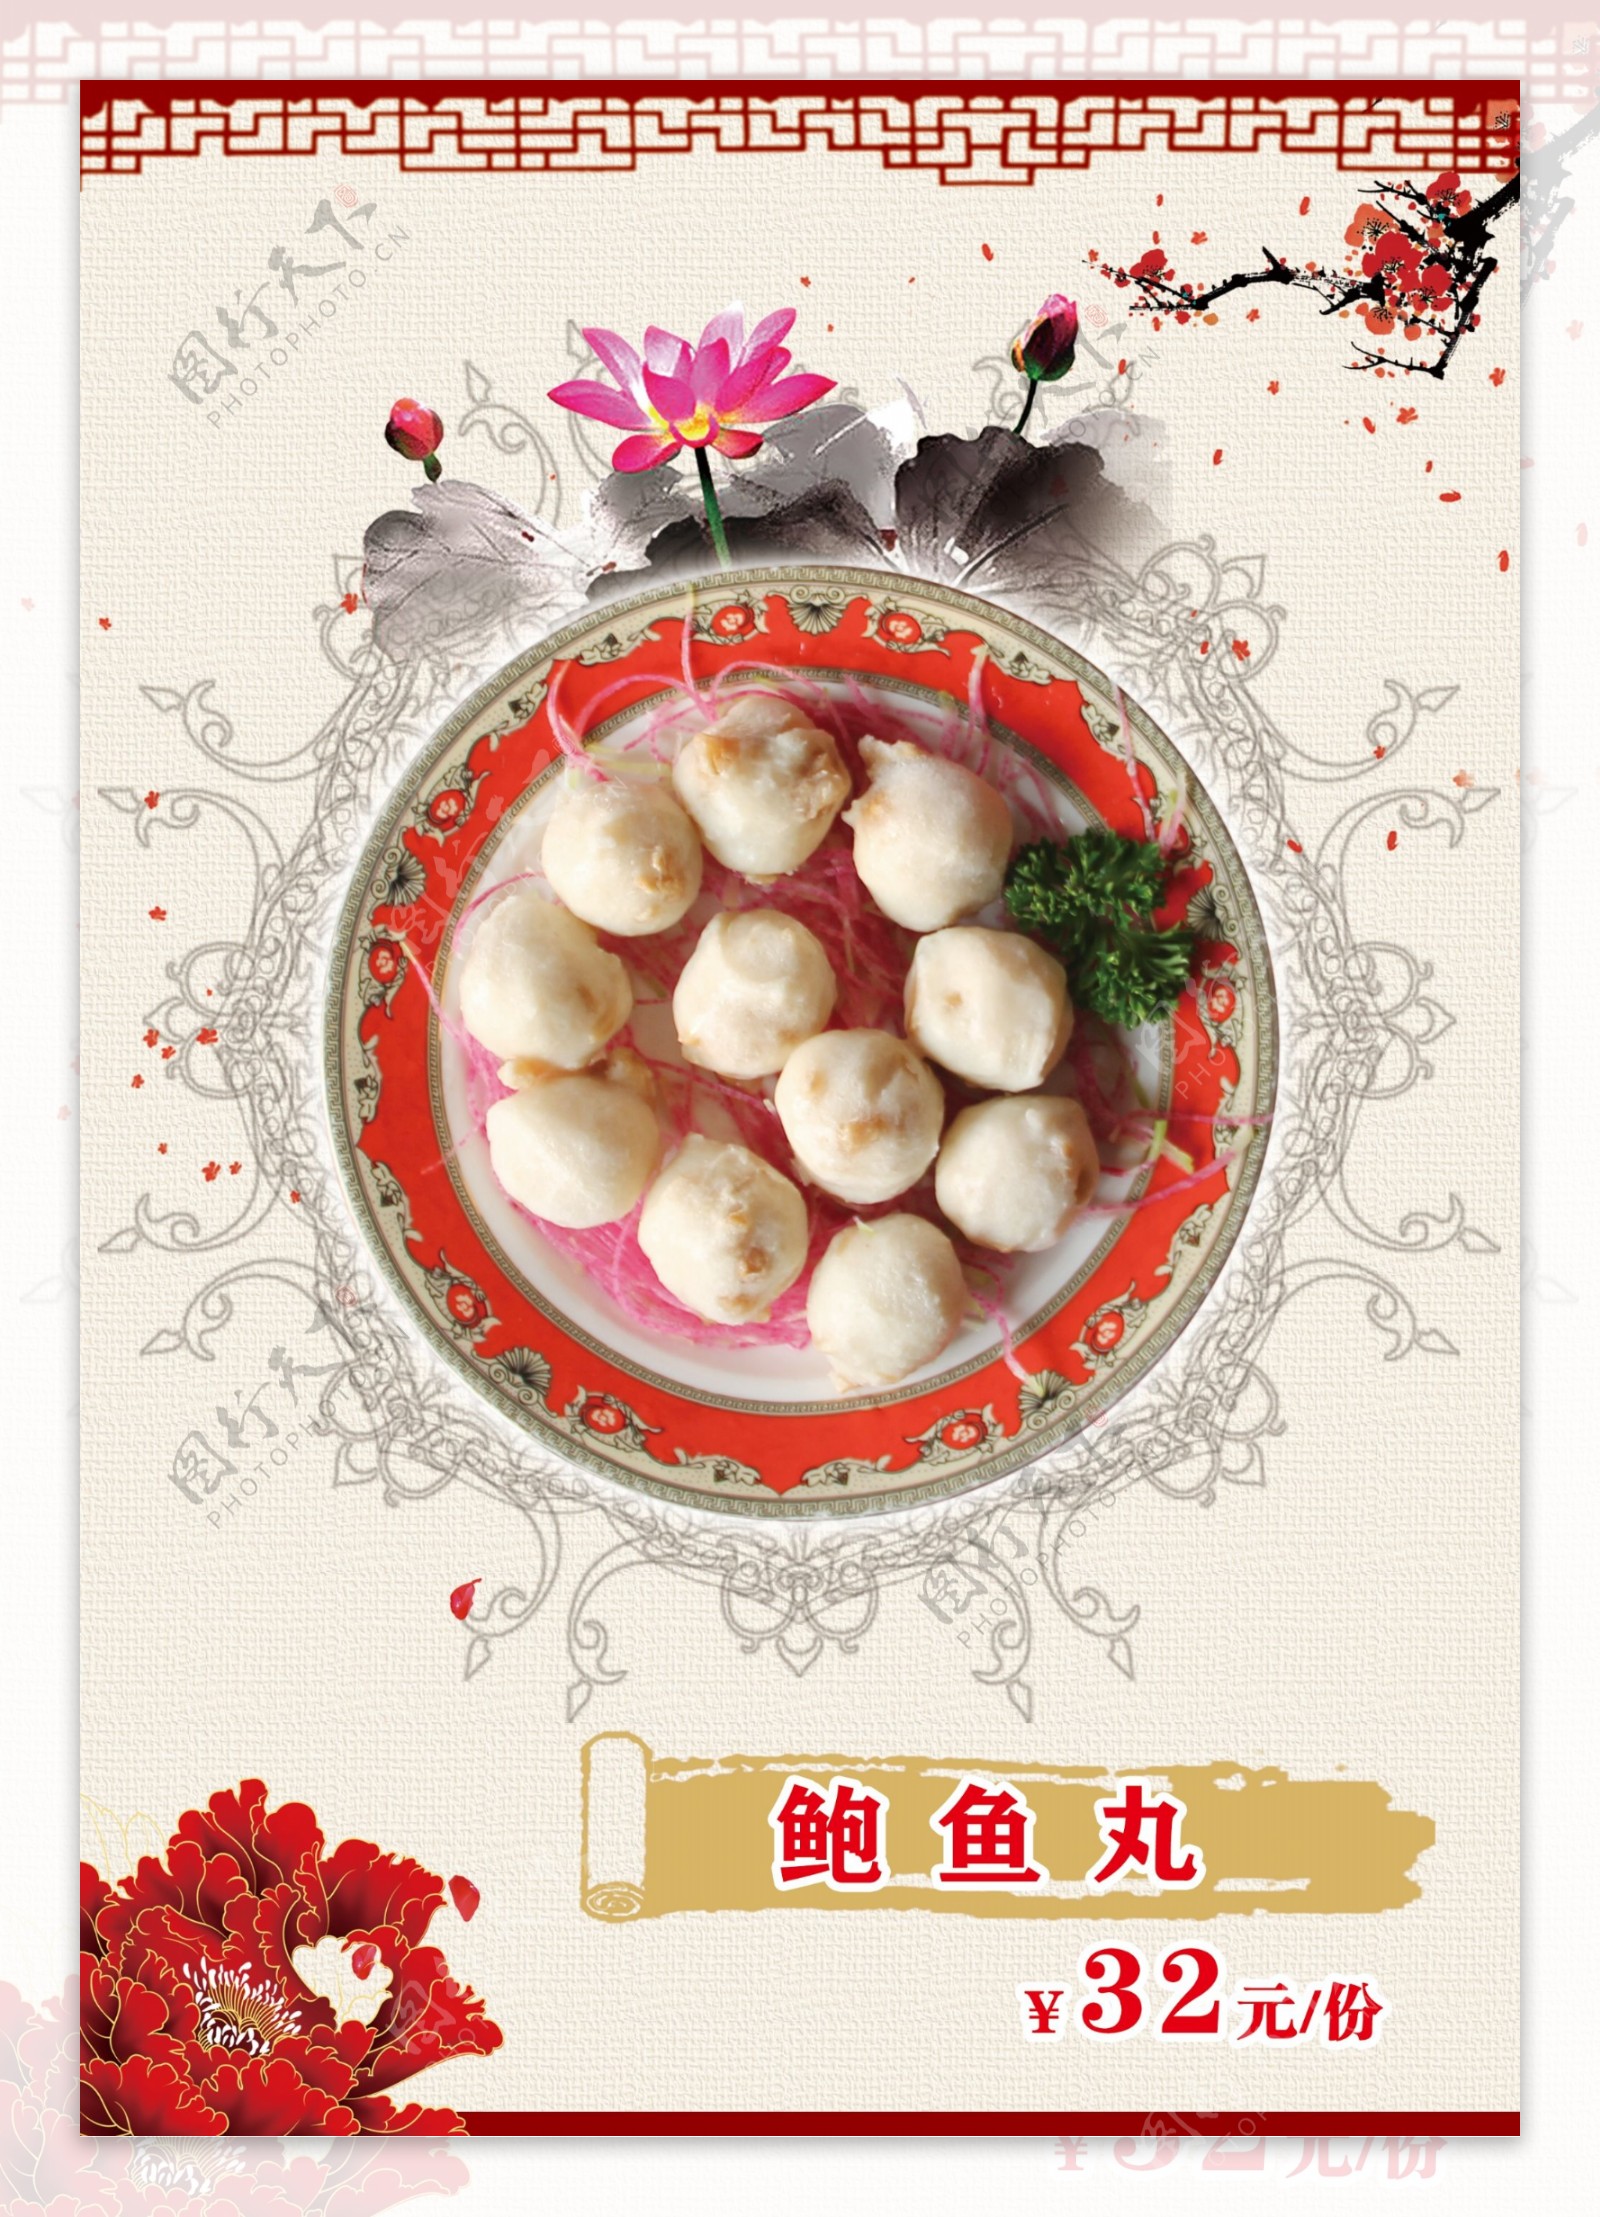 中国风豆捞菜单设计背景图片高清psd下载